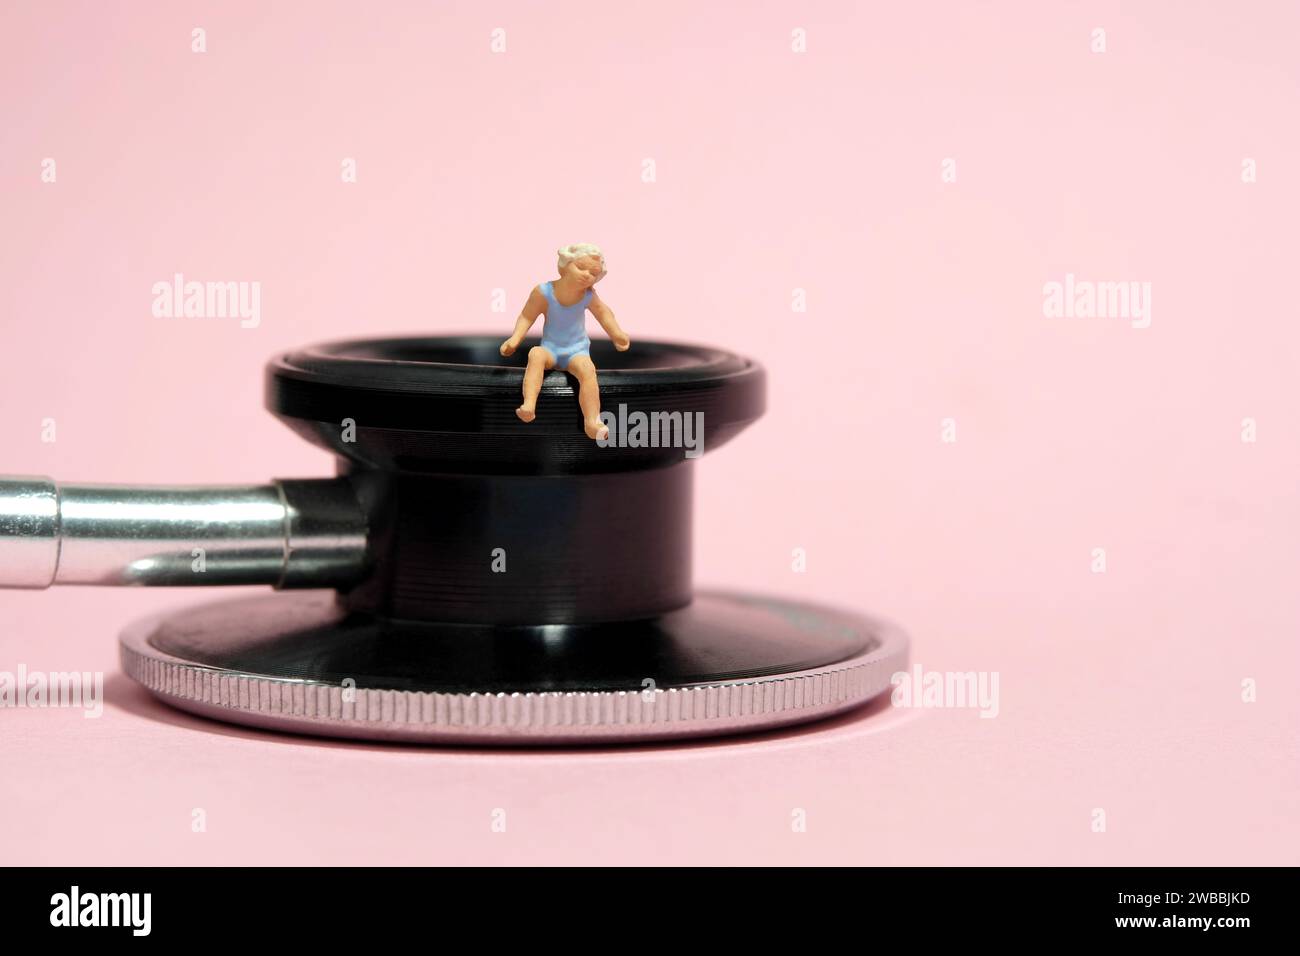 Photographie miniature de figurine de jouet de personnes minuscules. Une petite fille assise au-dessus du stéthoscope avec un ours en peluche. Isolé sur fond rose. Image photo Banque D'Images